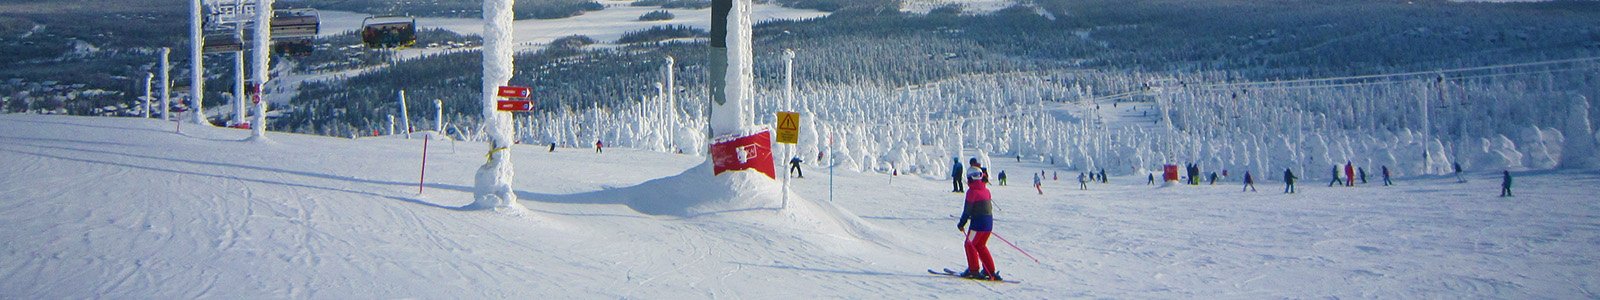 Wintersport Ruka-Kuusamo in Lapland